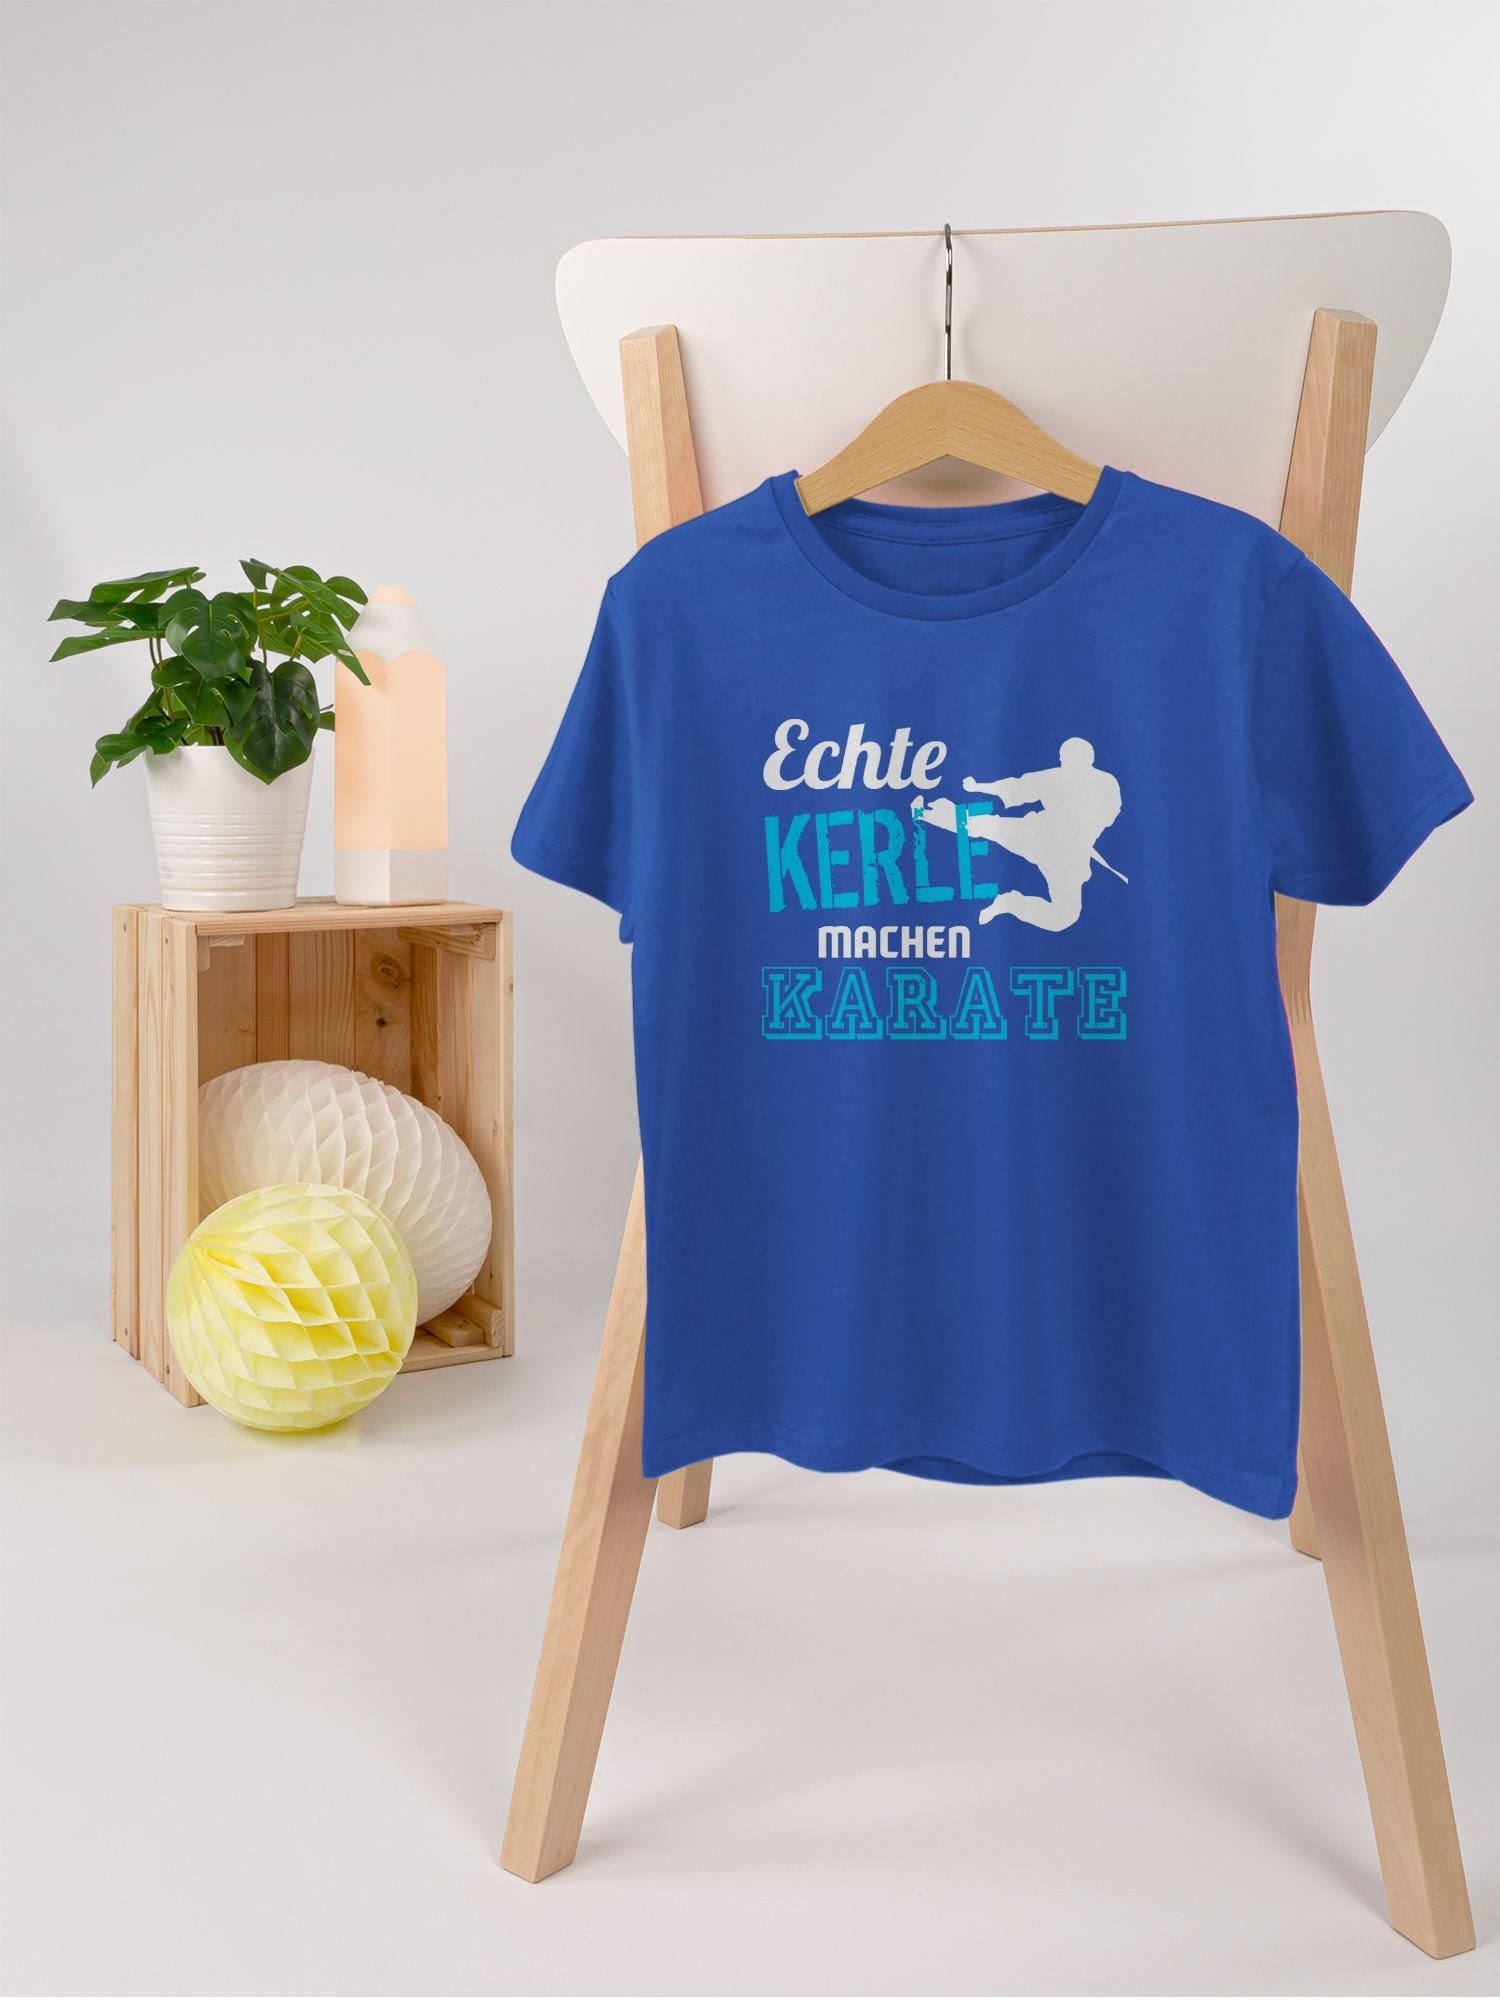 Kerle Kleidung Shirtracer Karate 3 Echte Royalblau Kinder Sport T-Shirt machen